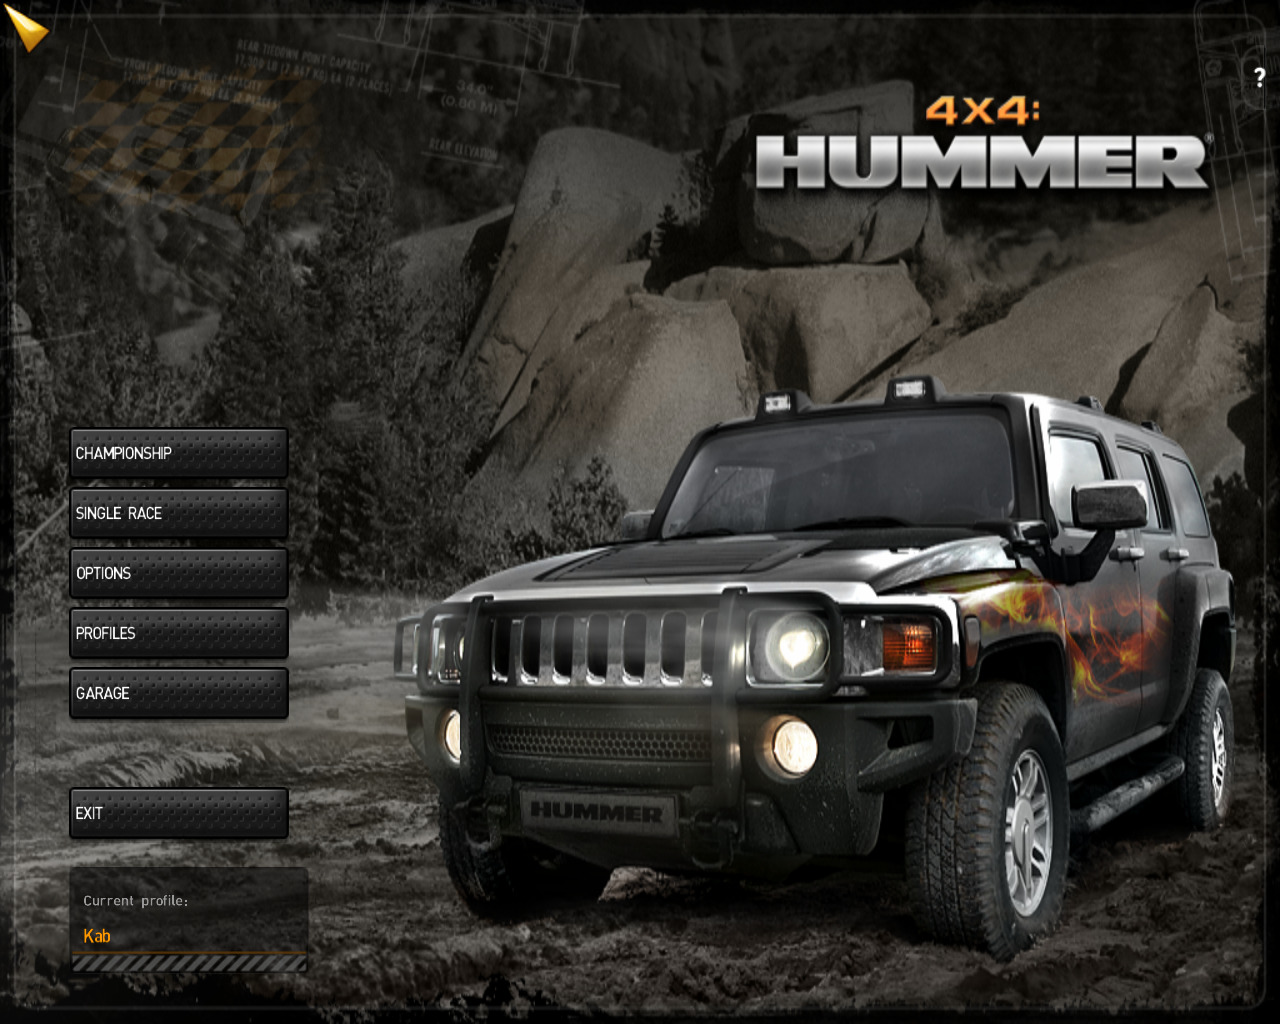 Полный привод ру. Hummer 4x4 полный привод. Хаммер 4х4 полный привод 2. Полный привод 2 Hummer УАЗ. Полный привод 2 Hummer extreme Edition.